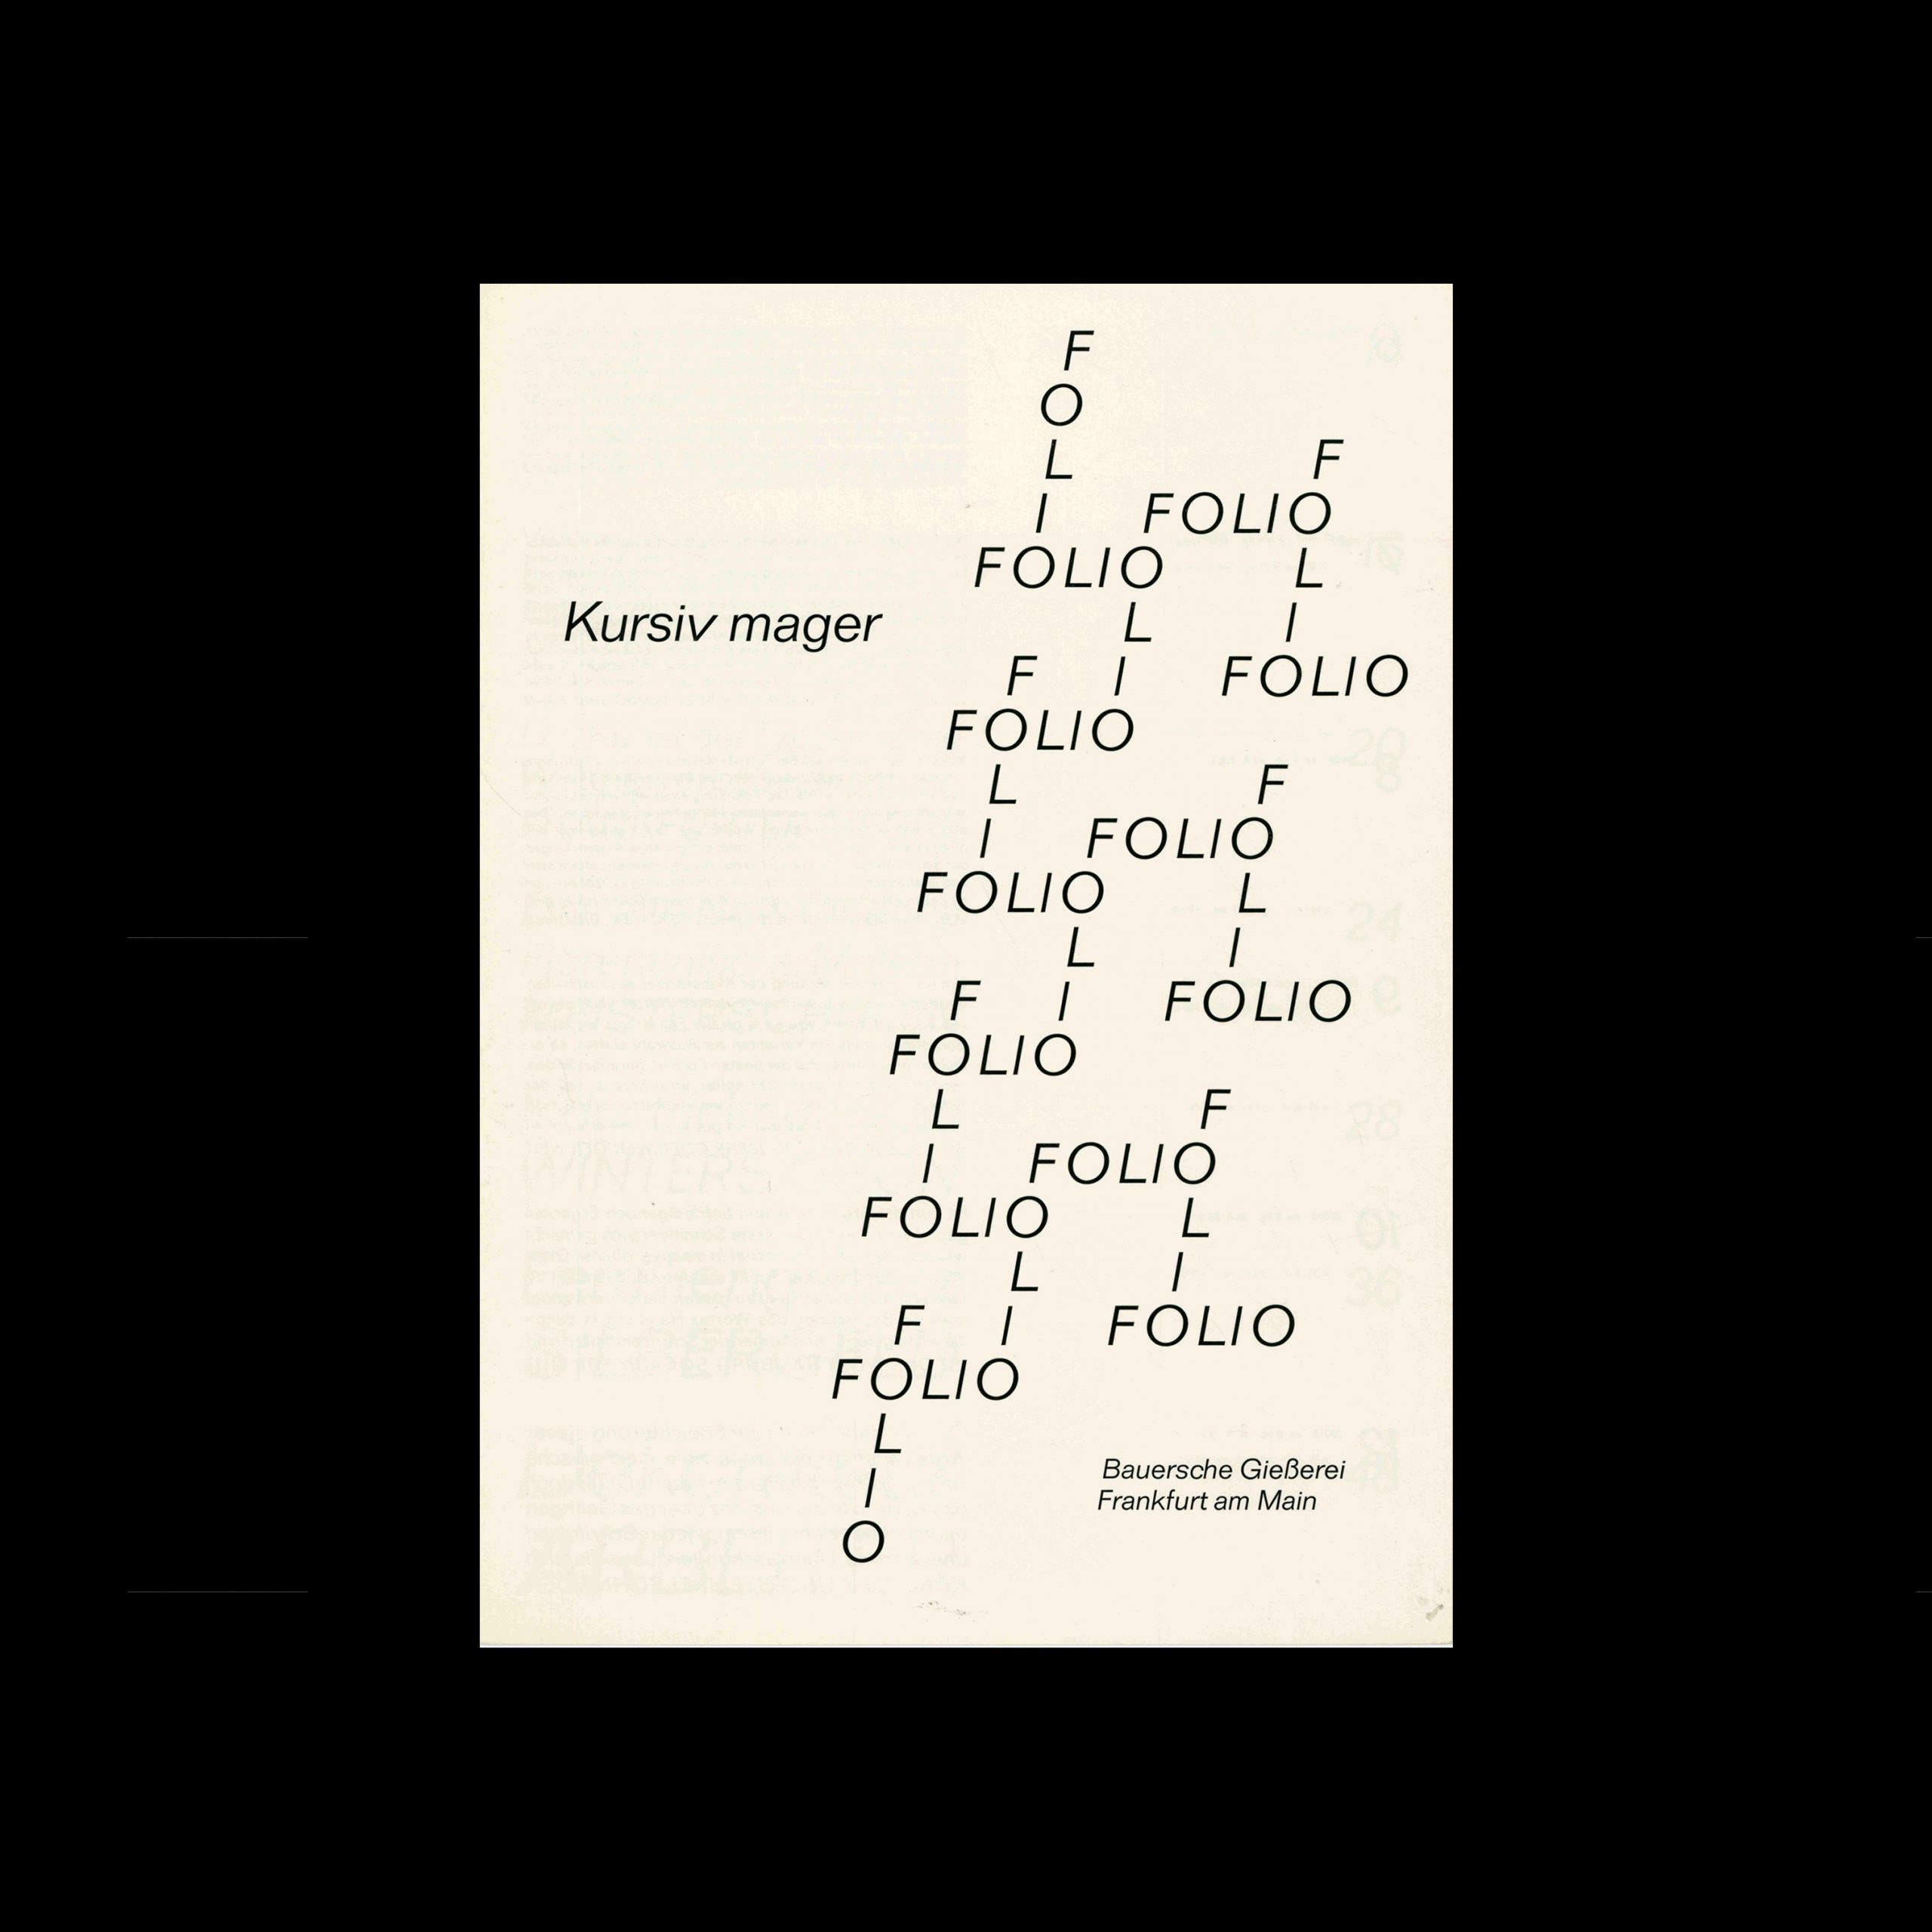 Die Folio, Bauersche Giesserei, Type Specimen, 1965 